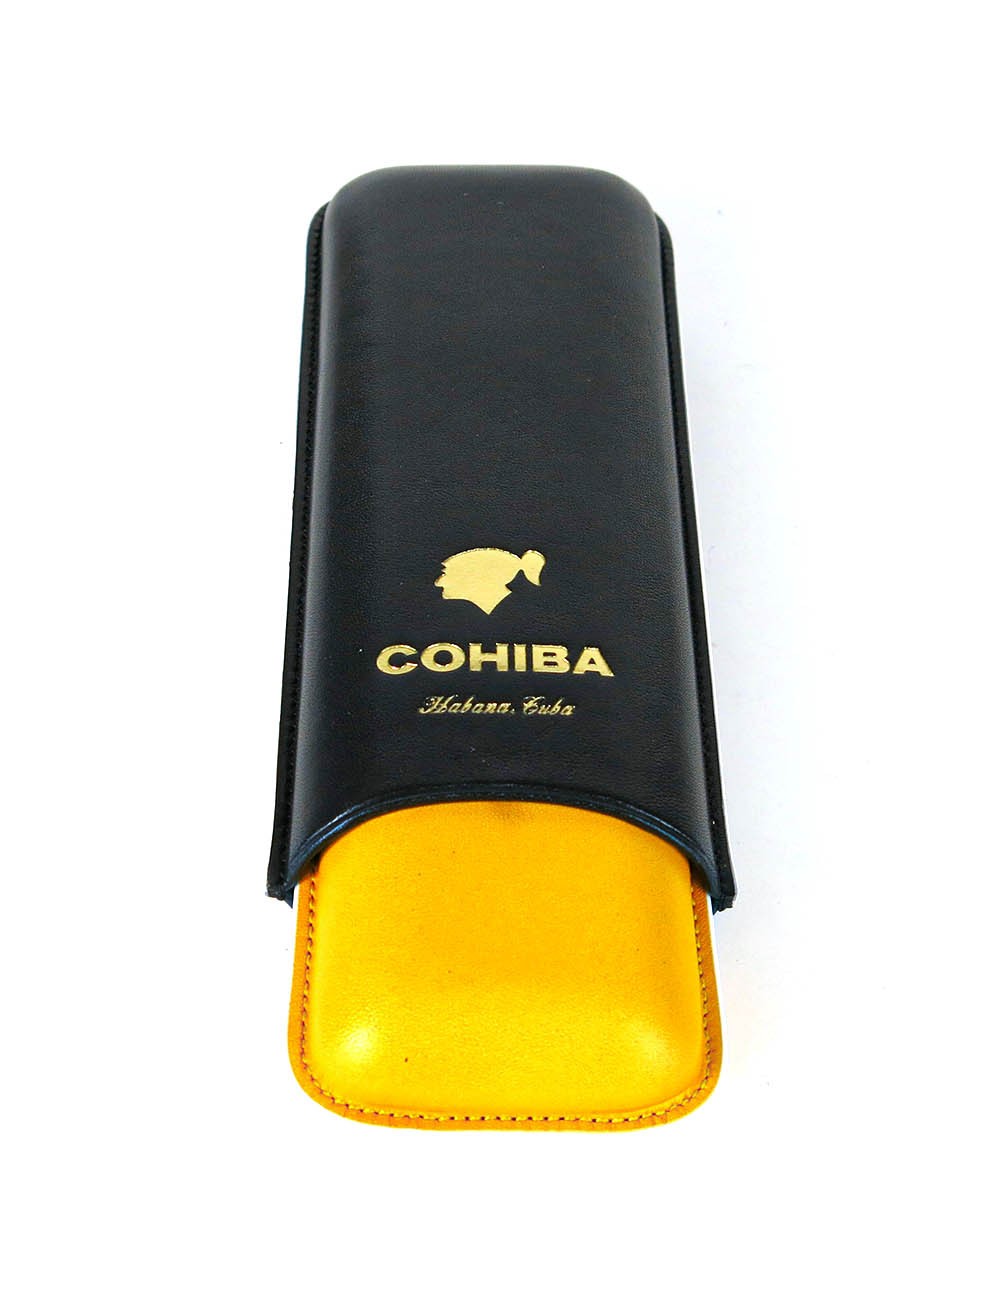 Регулируемый кожаный портсигар COHIBA на 2 сигары